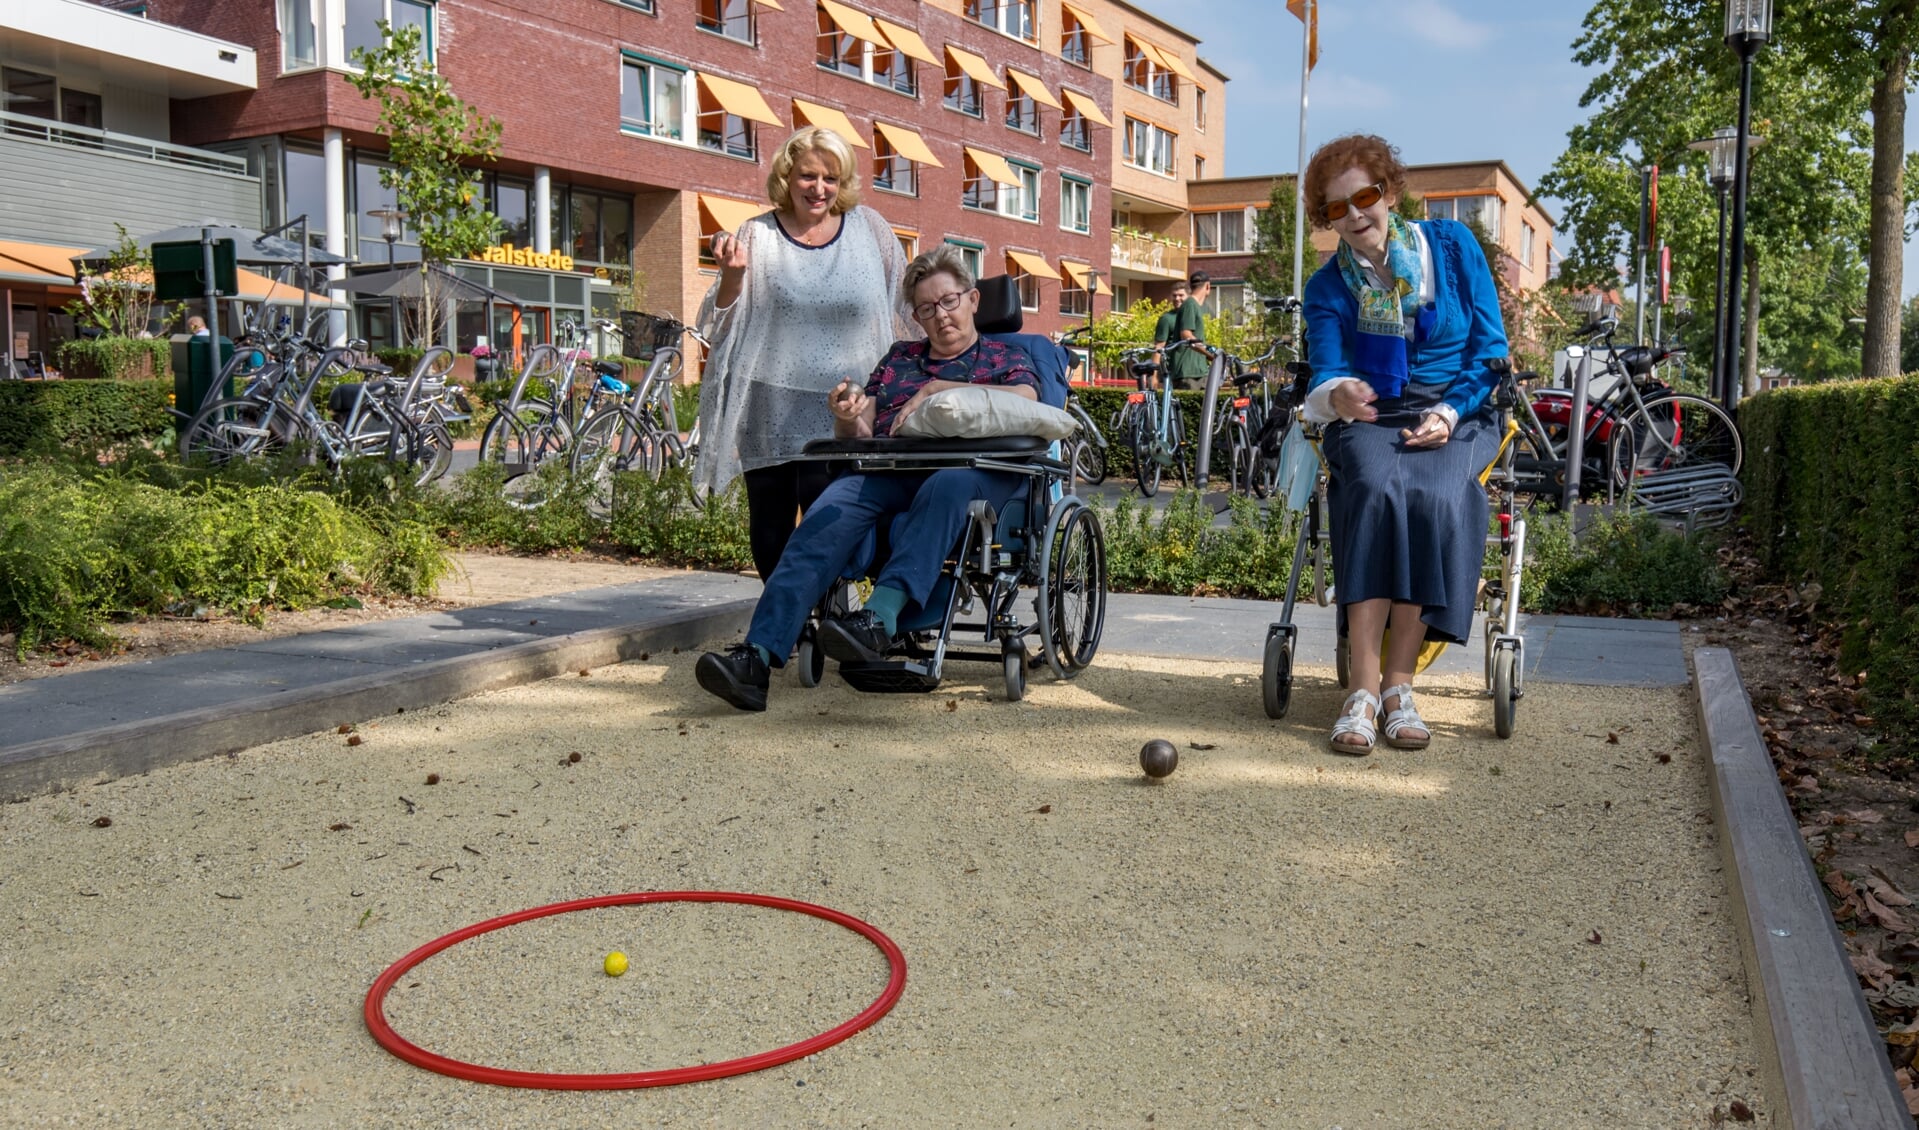 Welzijnsmedewerker Natascha van Empel begeleidt bewoners van Woonzorgcentrum Walstede bij hun balspel op het jeu de boules-baantje.